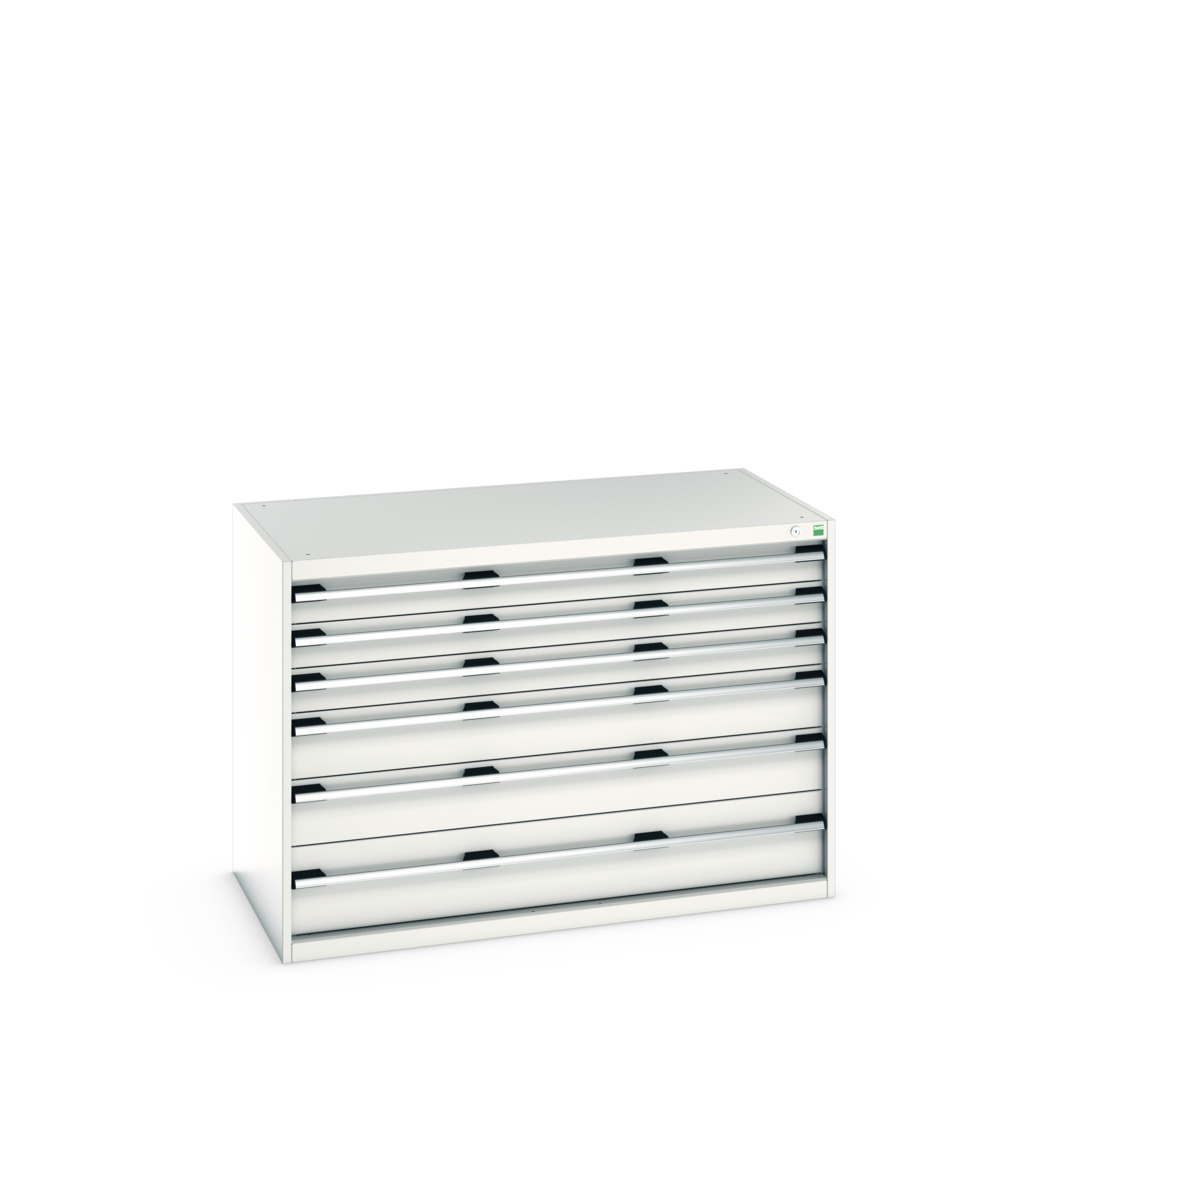 40030085.16V - cubio drawer cabinet